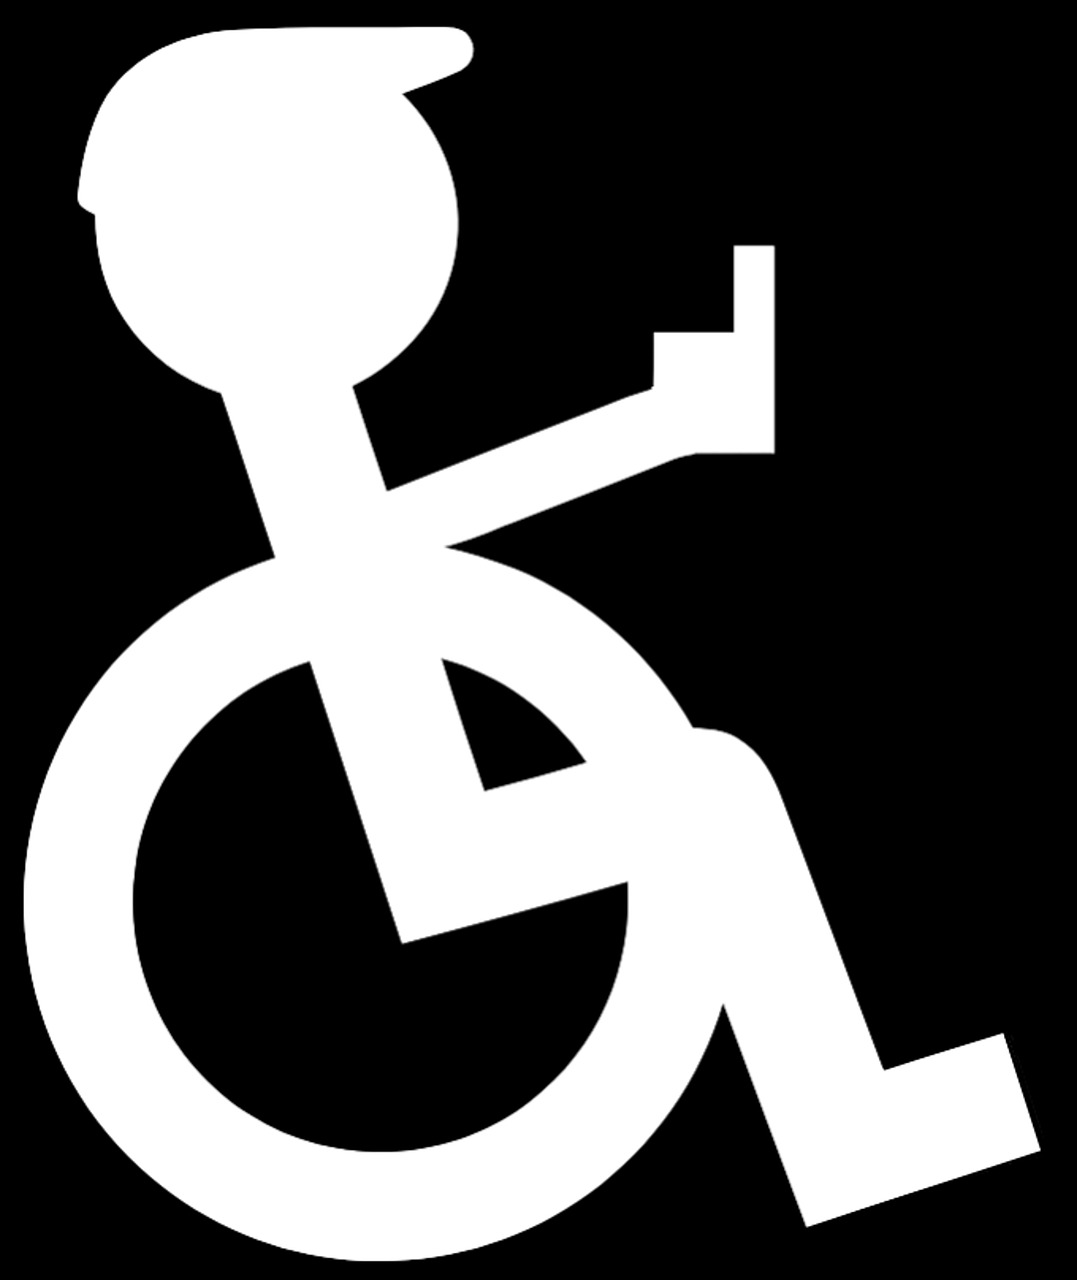 Neįgaliųjų Vežimėlis, Logotipas, Piktograma, Negalia, Neįgalus, Lame, Judumo Problemos, Fizinė Negalia, Neįgaliųjų Vežimėliai, Neįgaliųjų Vežimėlių Vartotojai